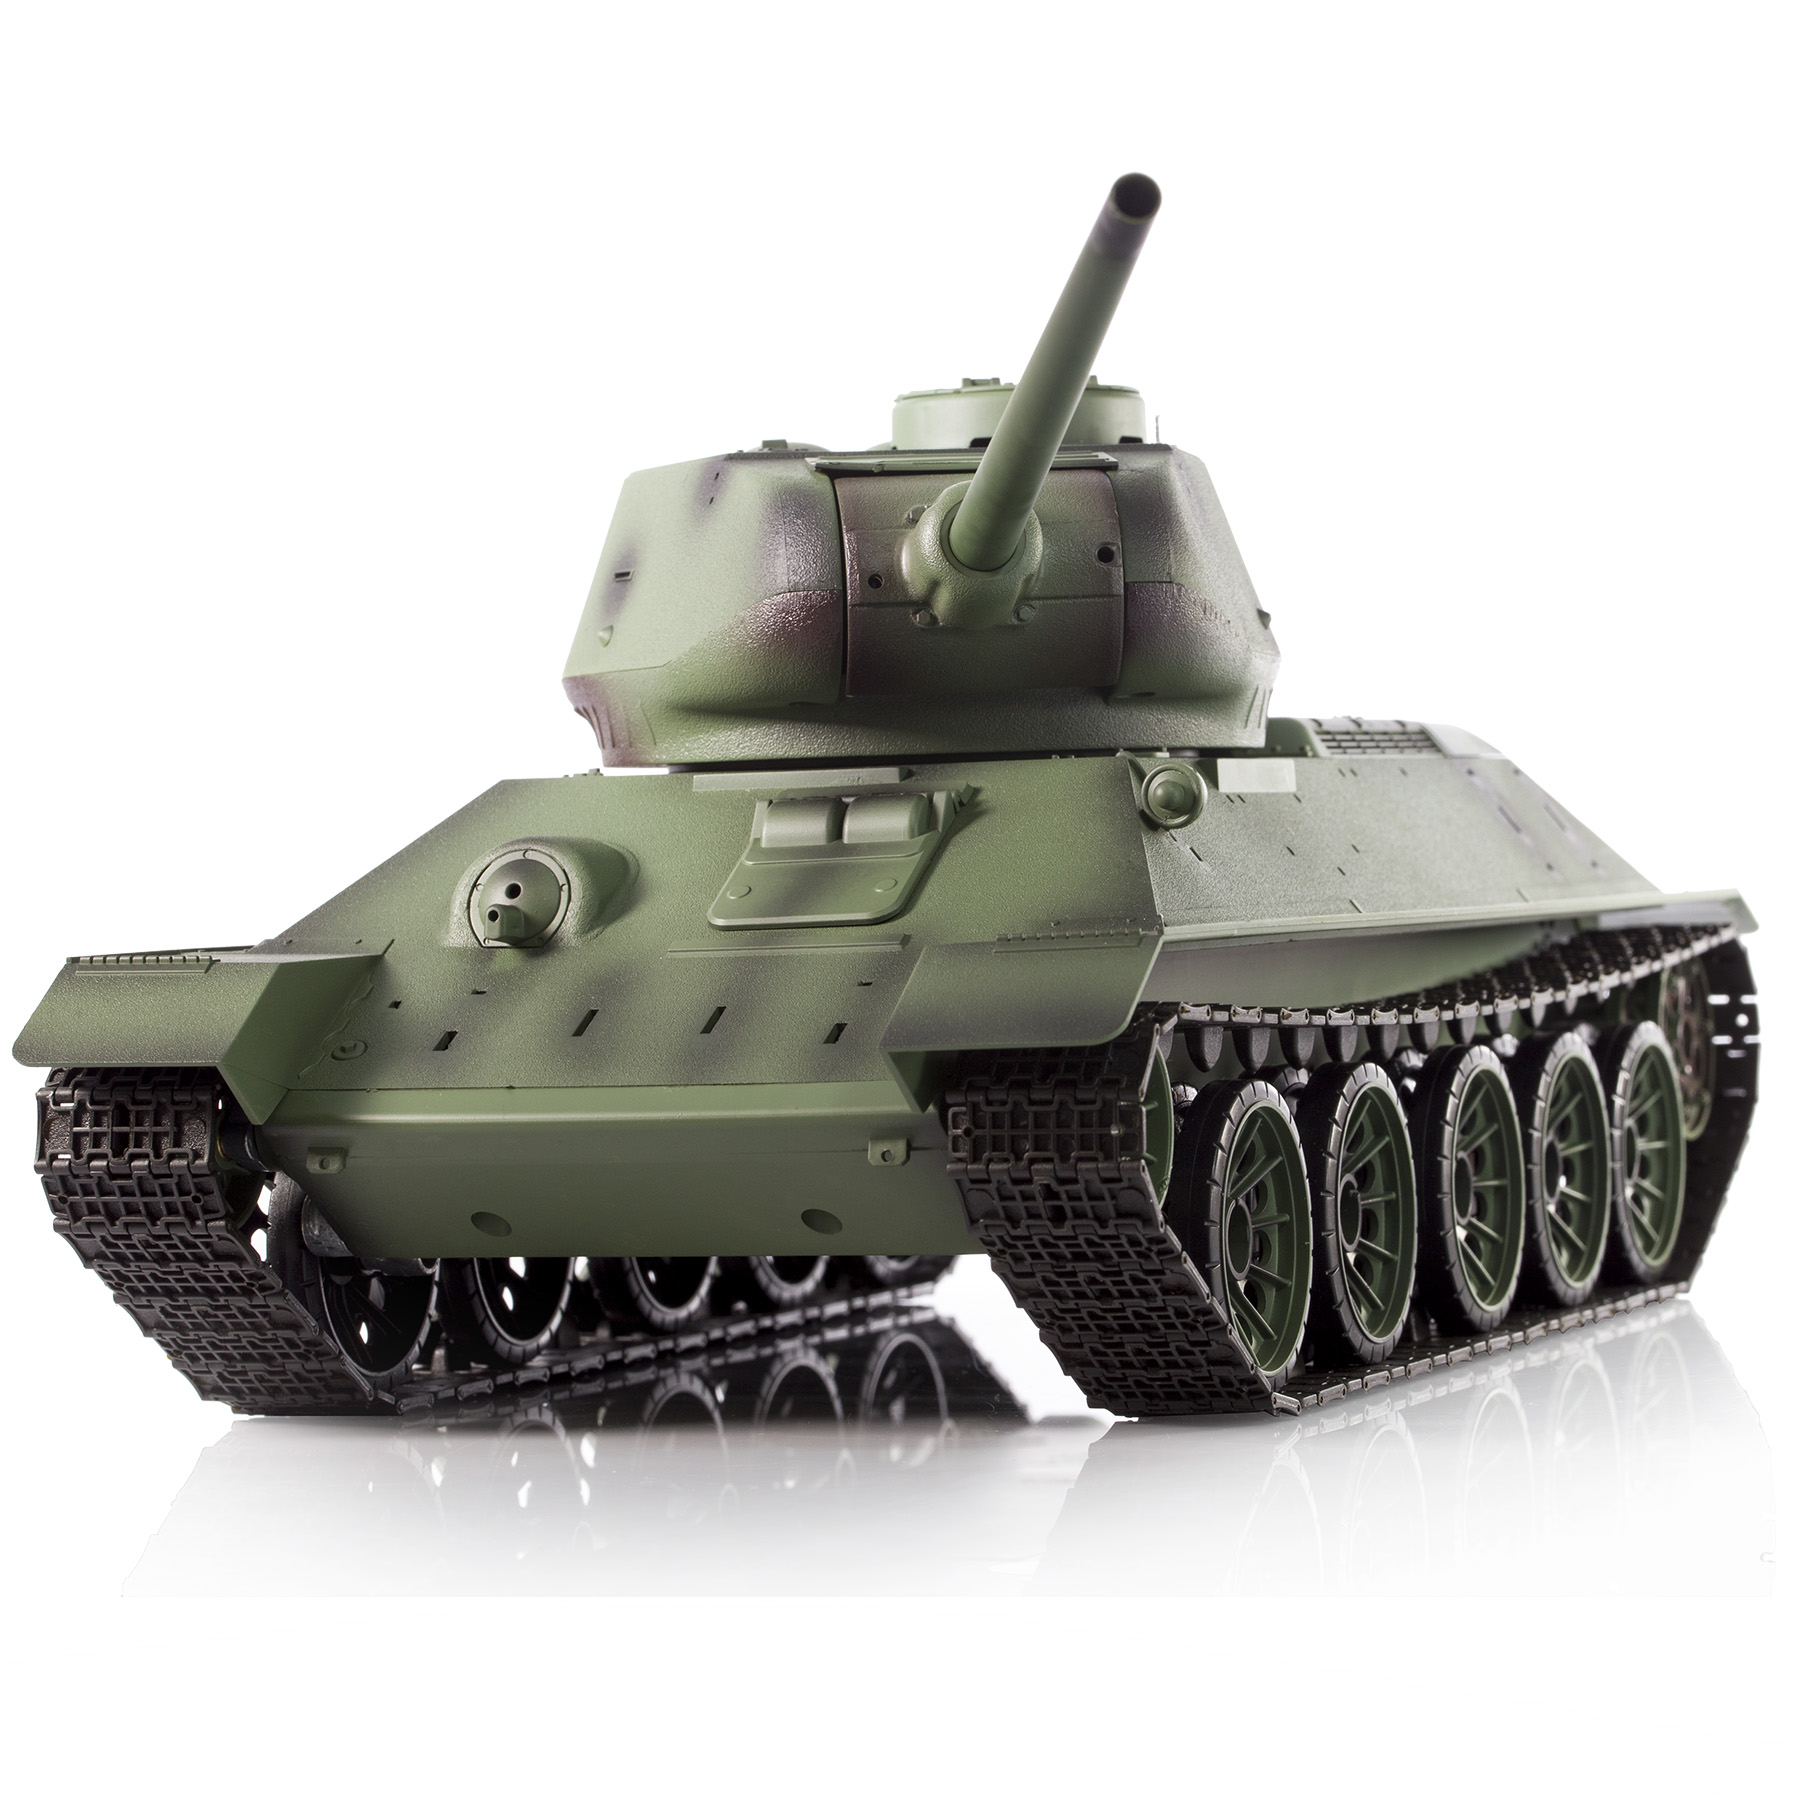 Радиоуправляемый танк Heng Long Russia T34-85 масштаб 1:16 2.4G - 3909-1Upg V7.0